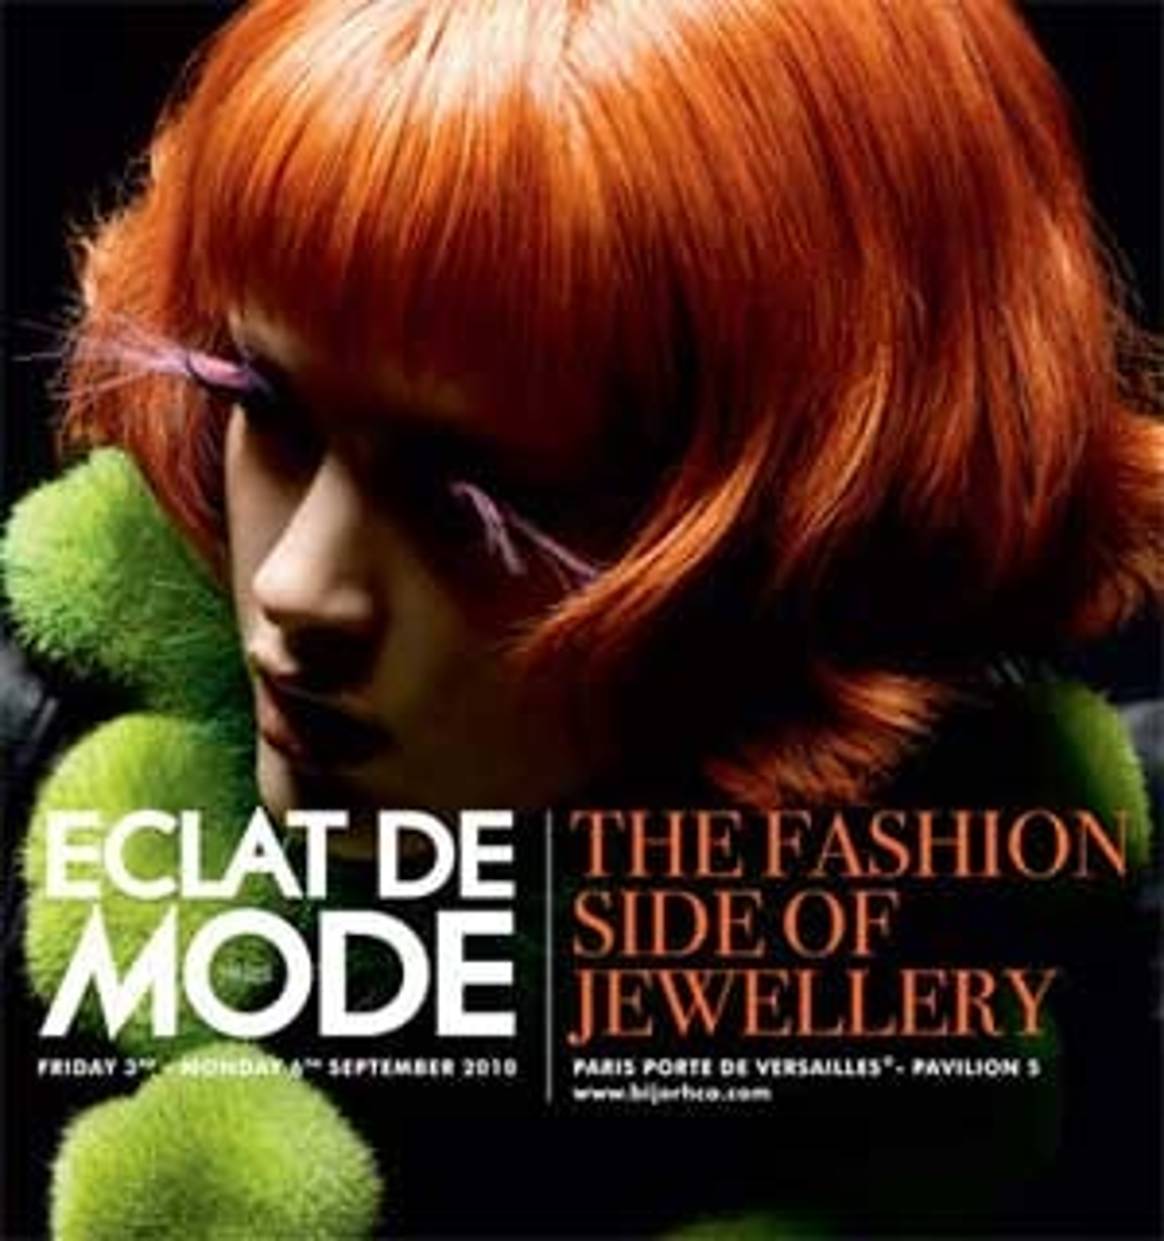 Eclat de Mode next September in Paris